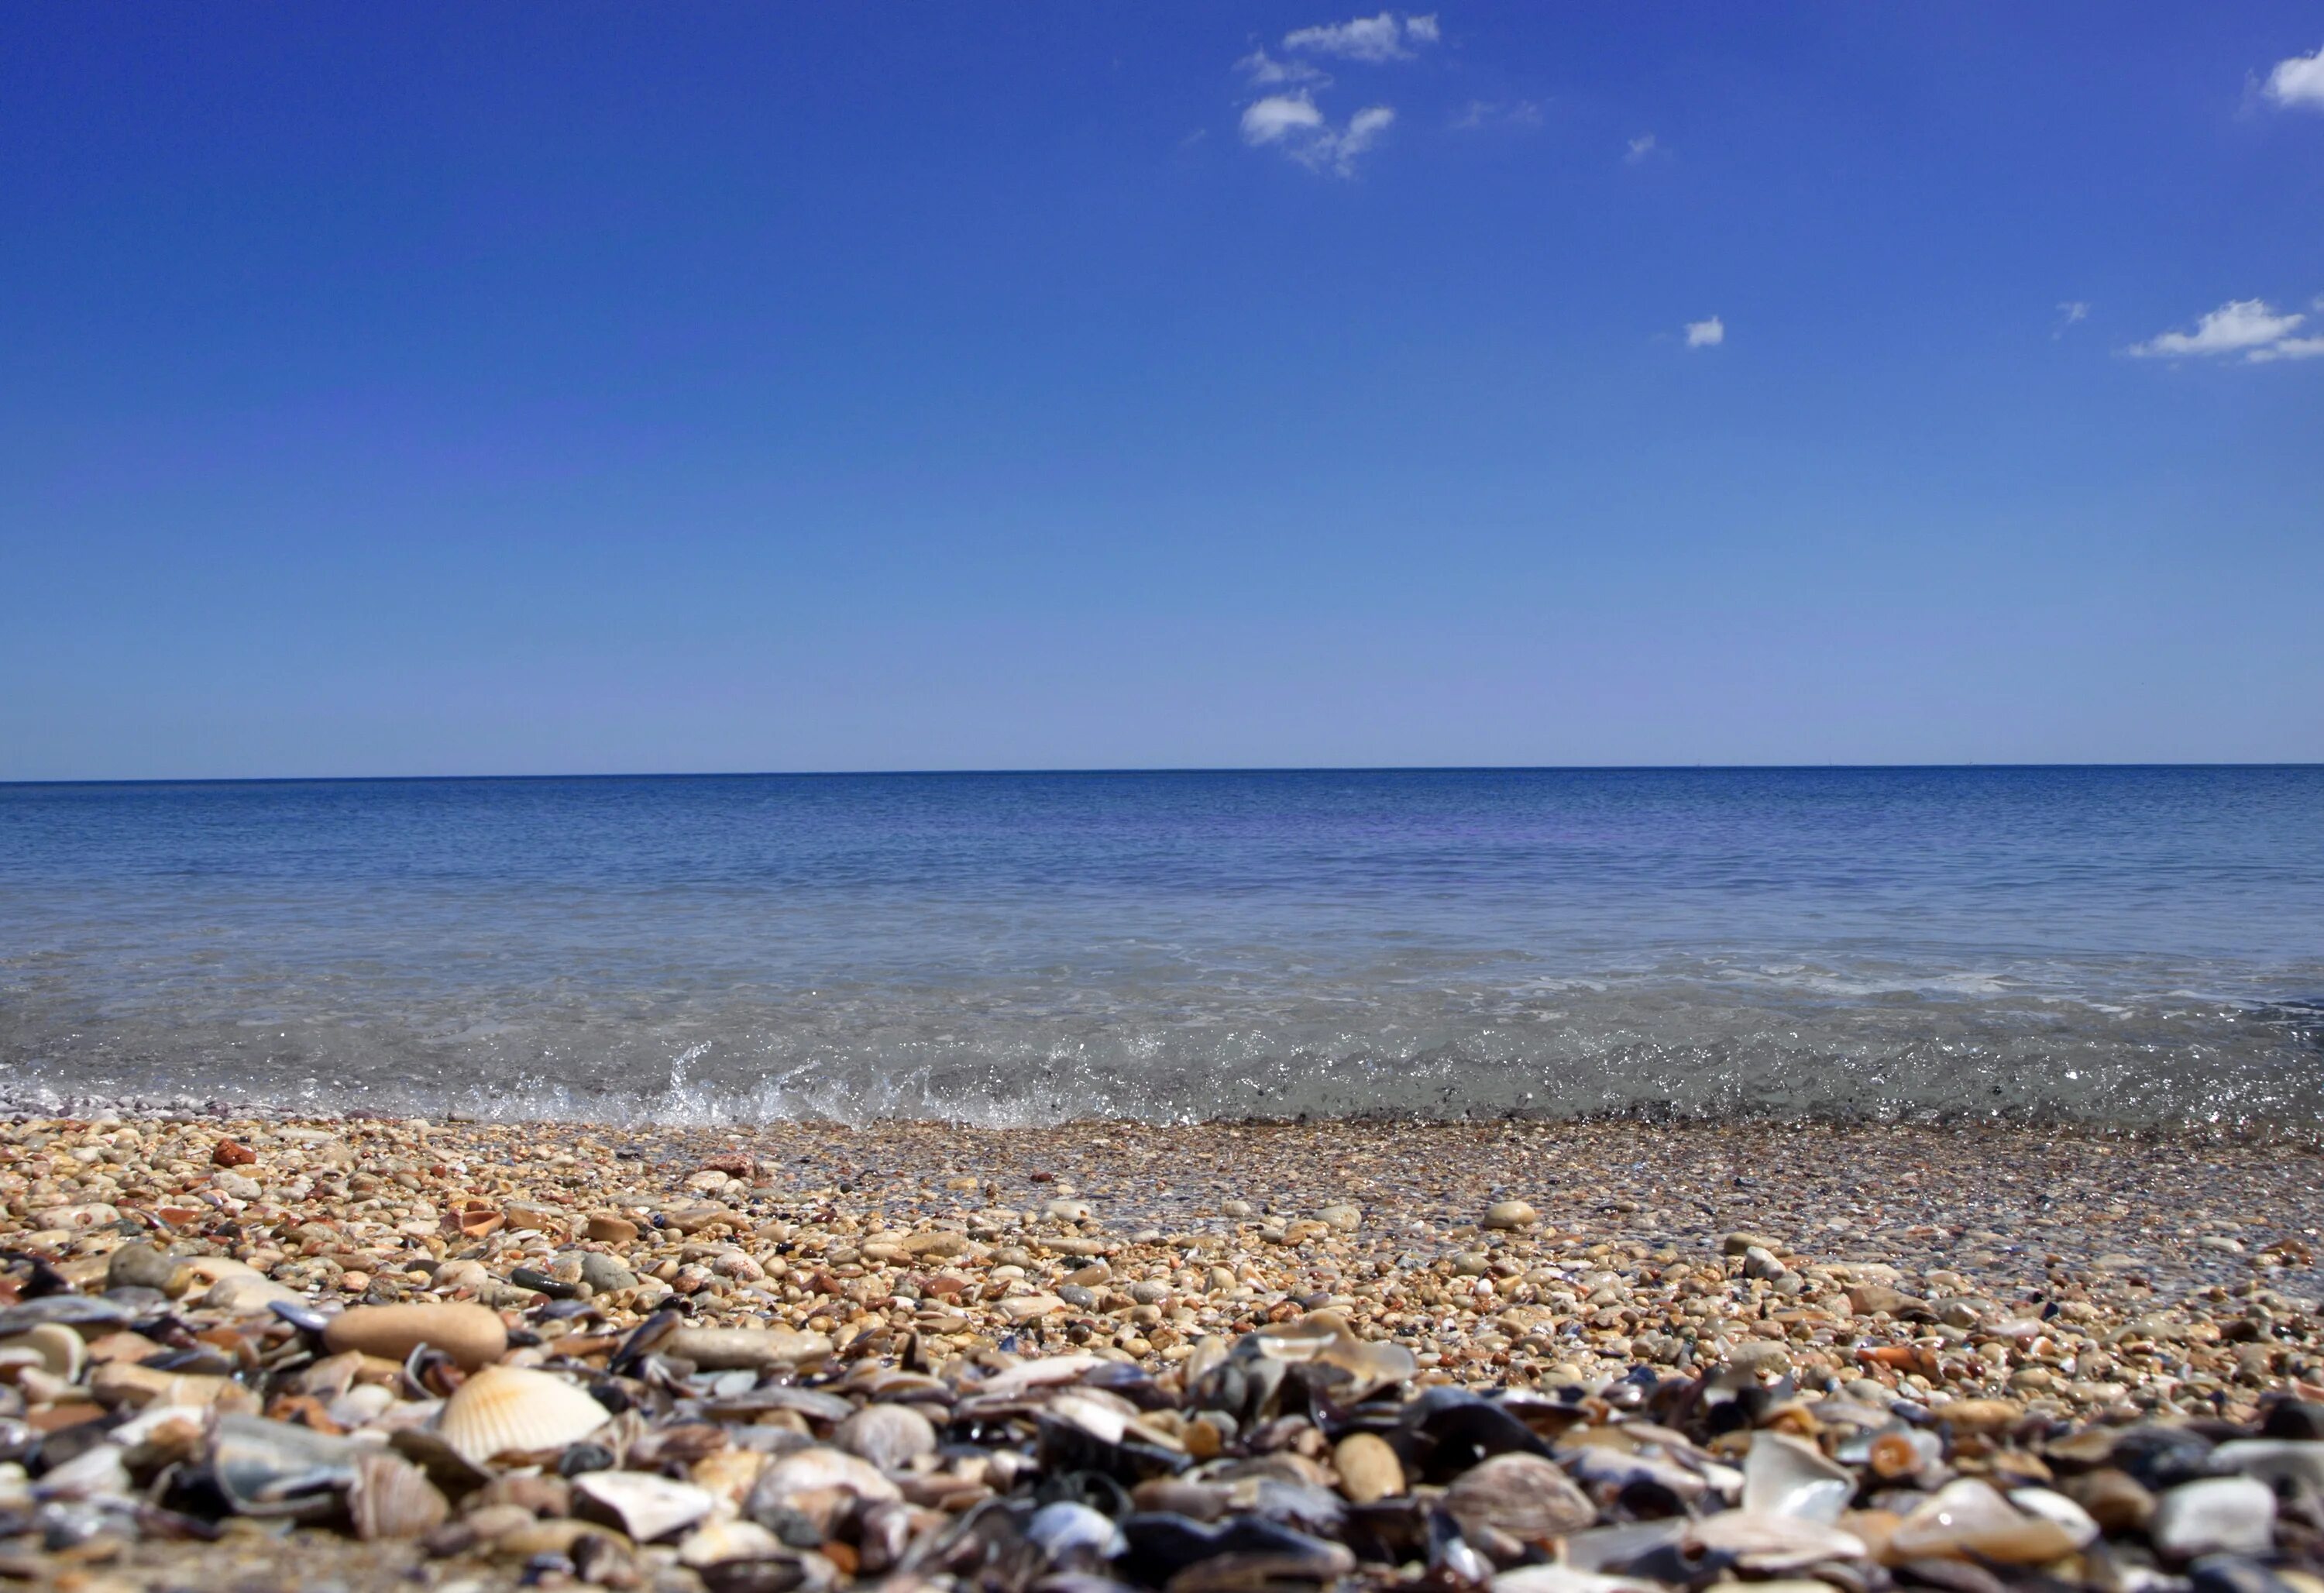 Галечный пляж Лазаревское. Черное море галечный пляж. Витязево галечный пляж. Черное море галечный берег.